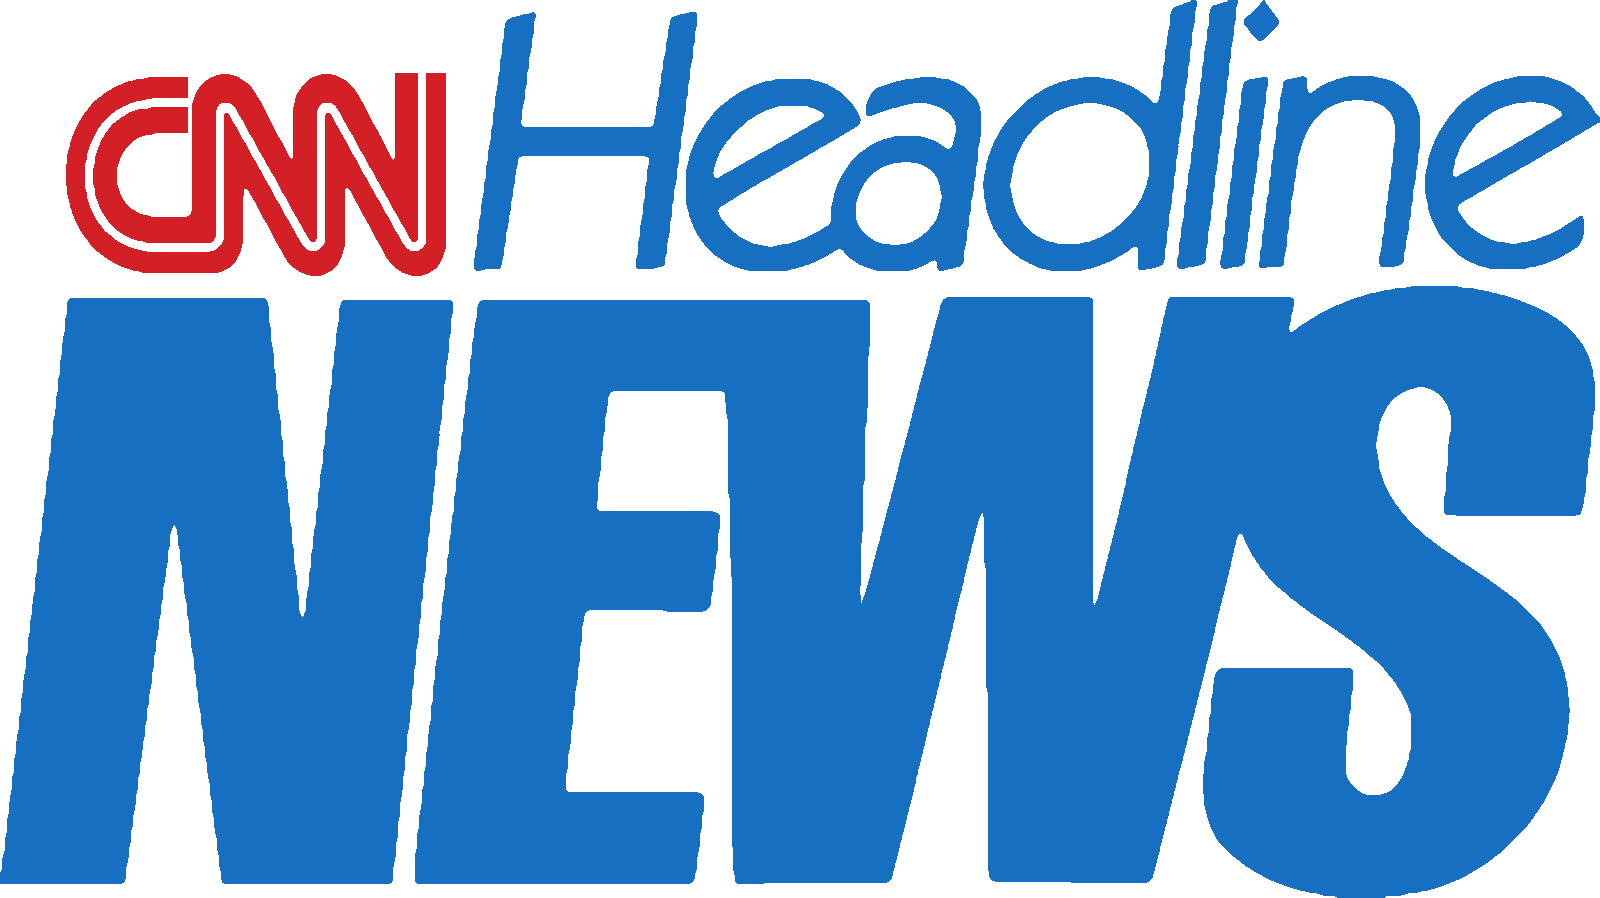 Cnn Headline News 1997 - Cnn Headlines News Logo (1600x898), Png Download